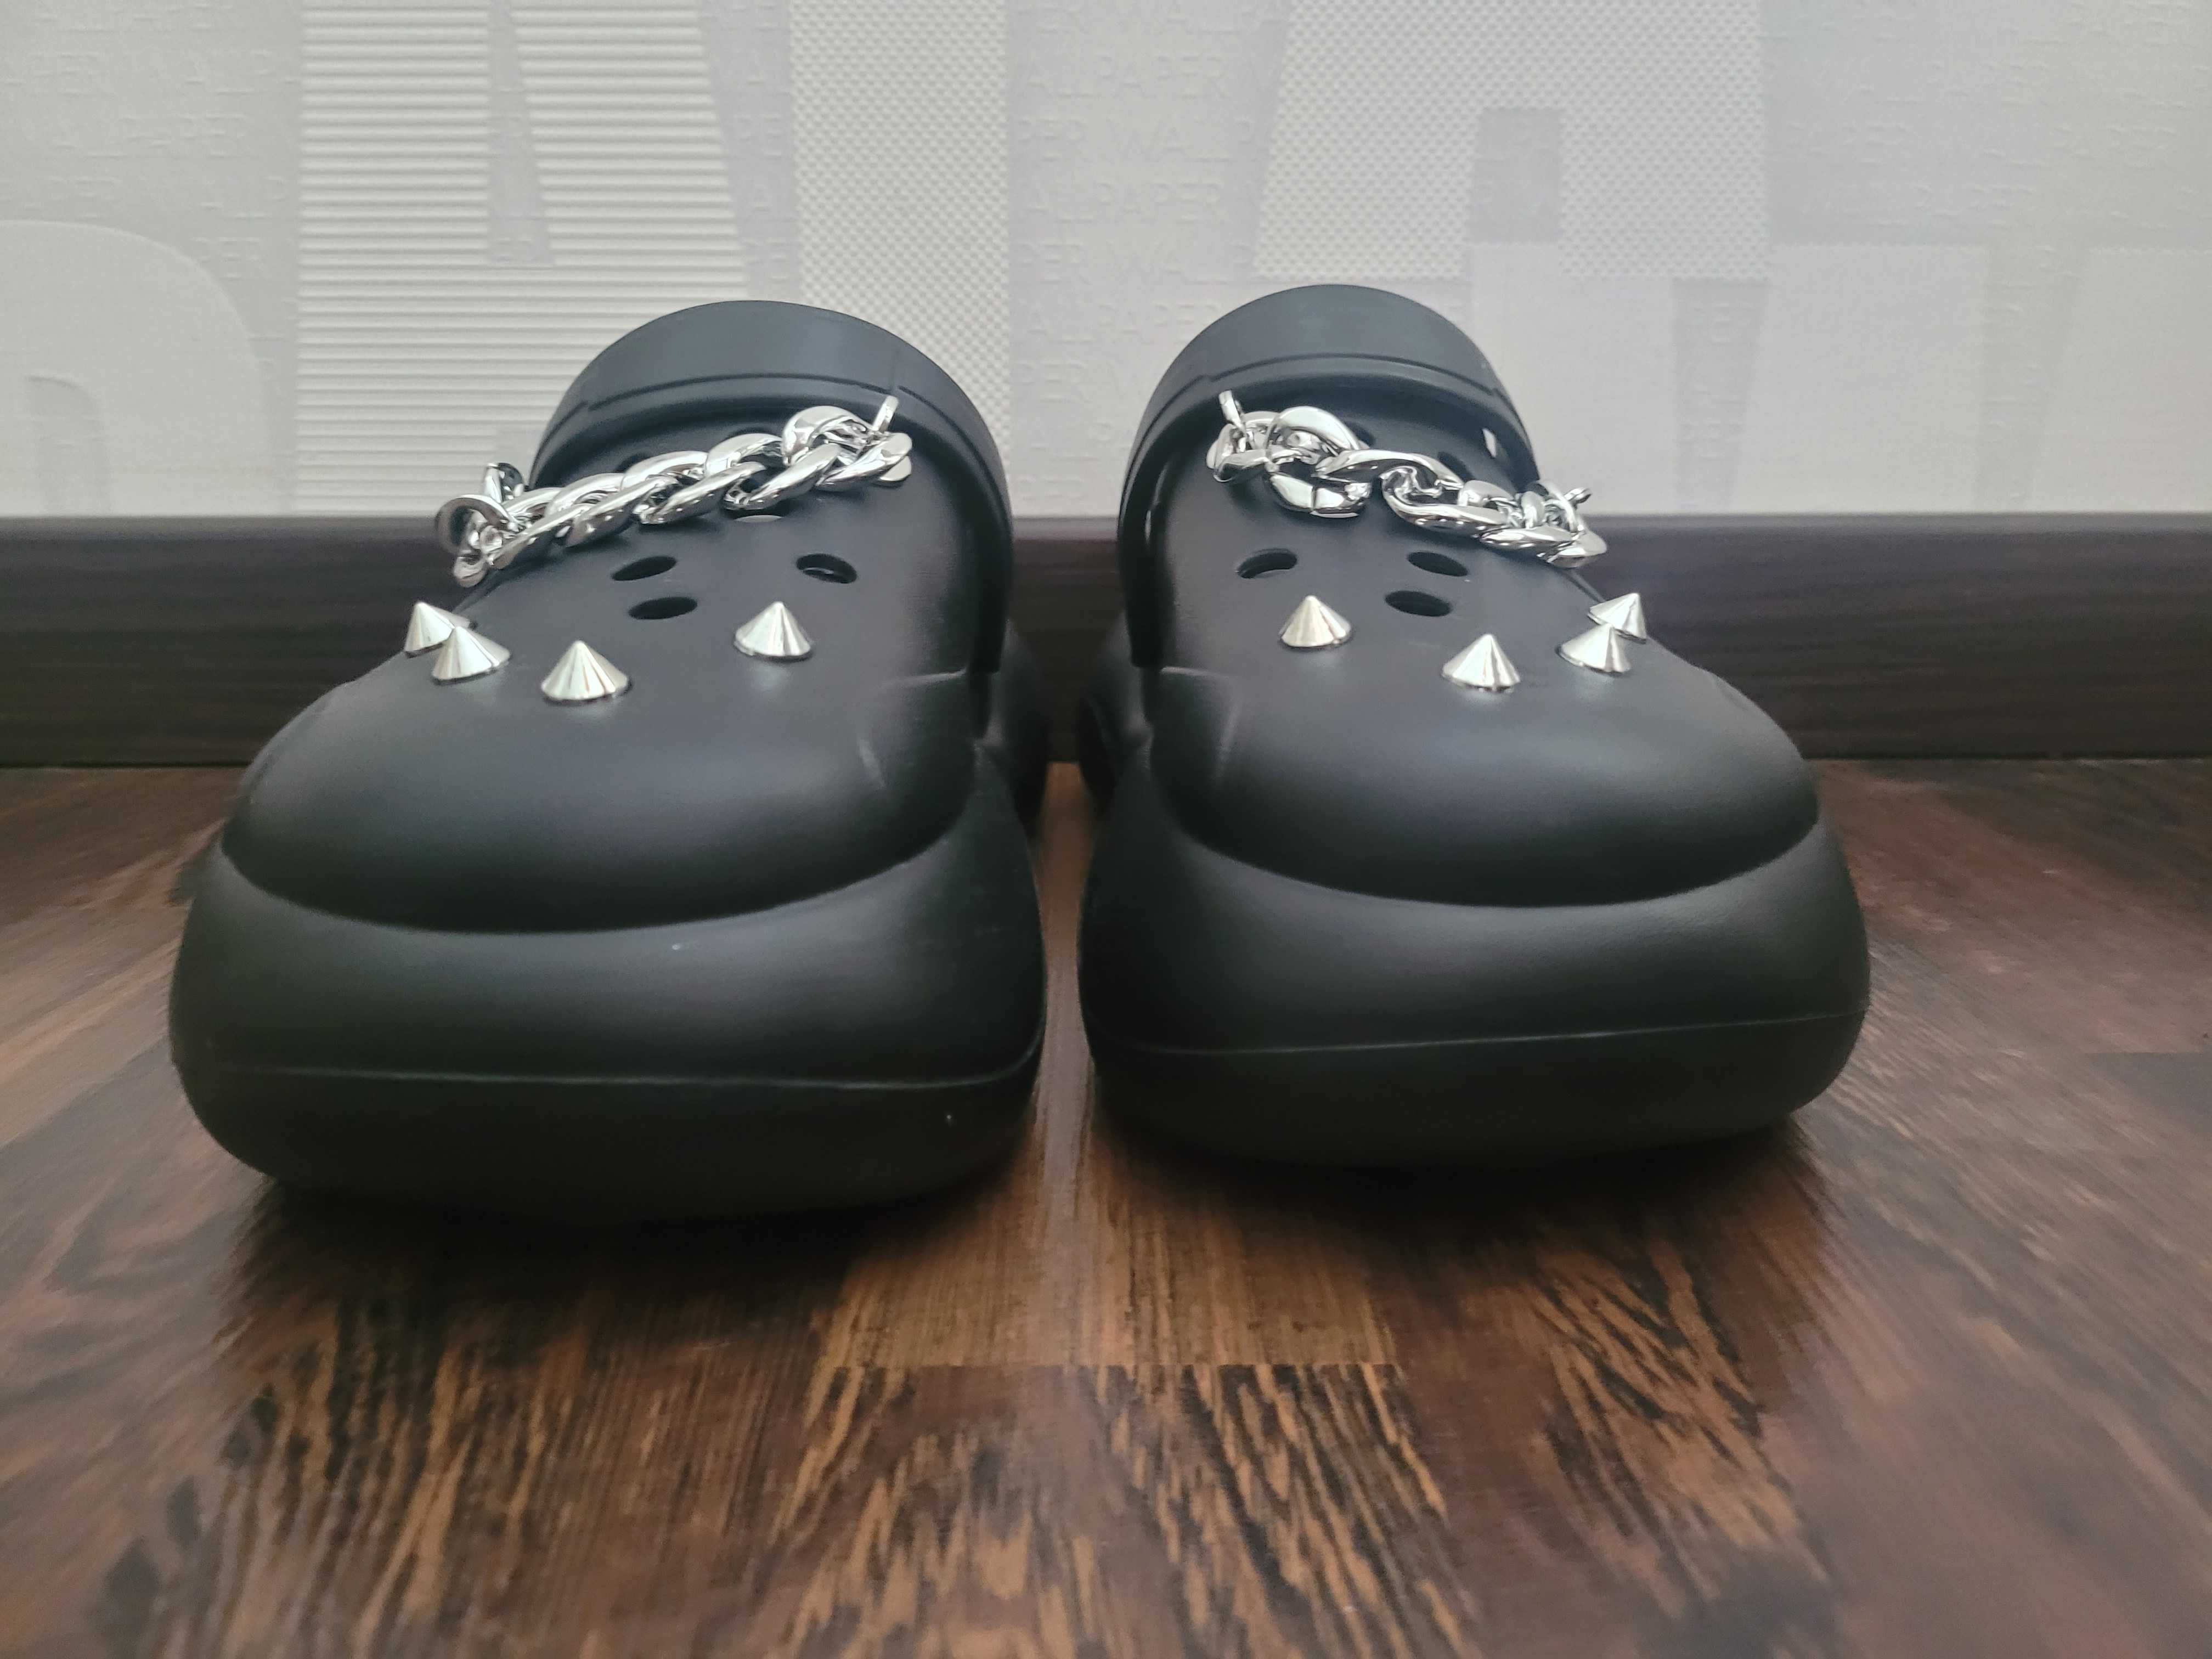 Клоги сандалі у стилі Crocs з шипами